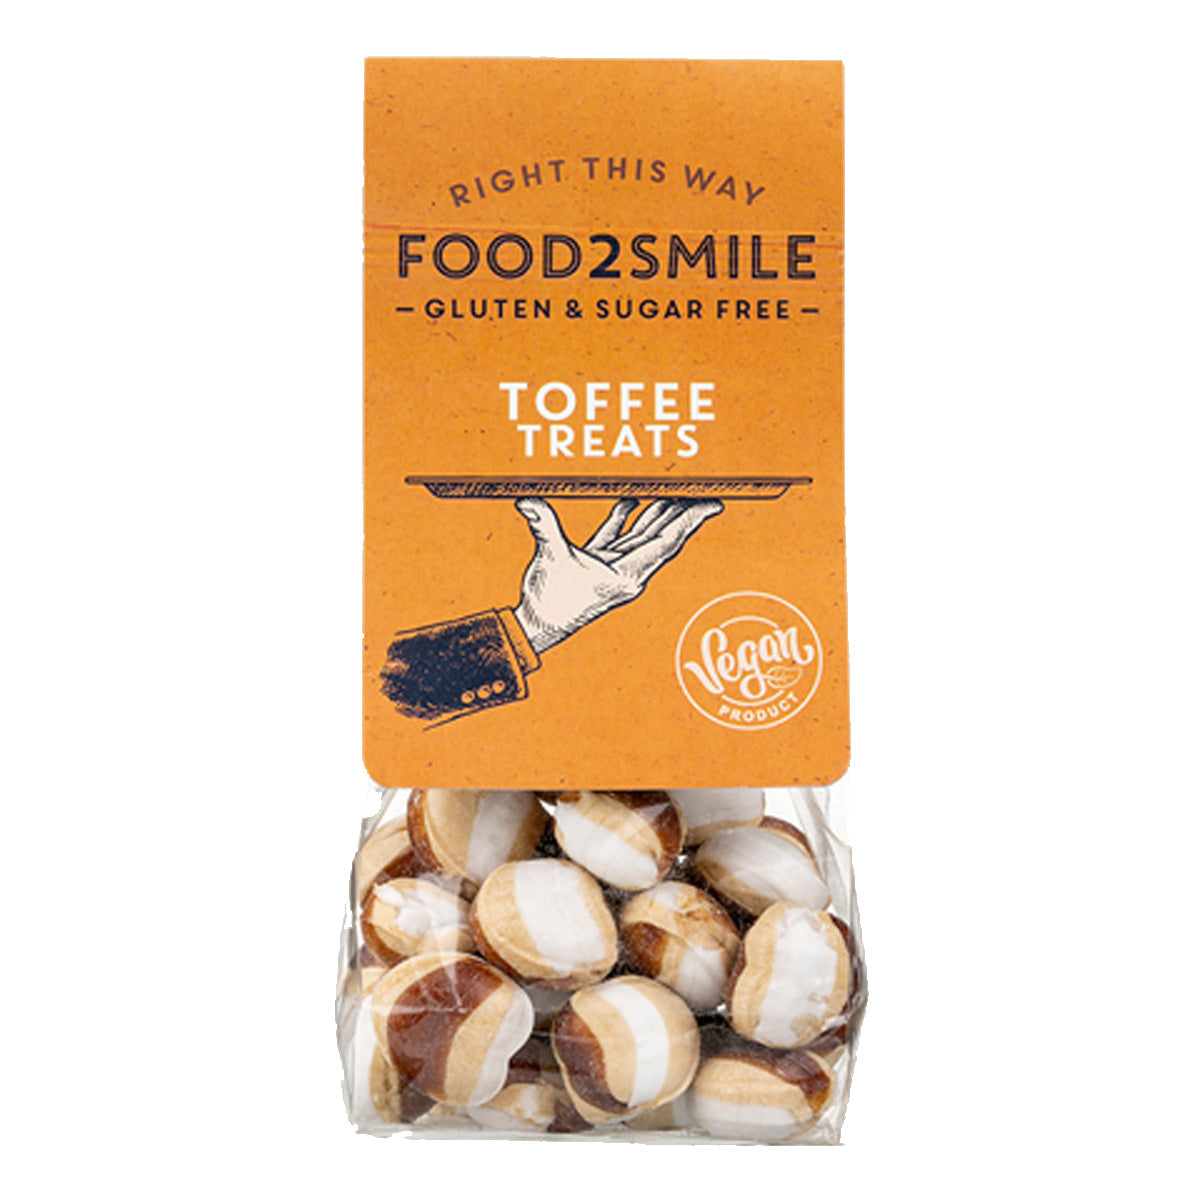 Food2Smile Toffee Treats snoepjes